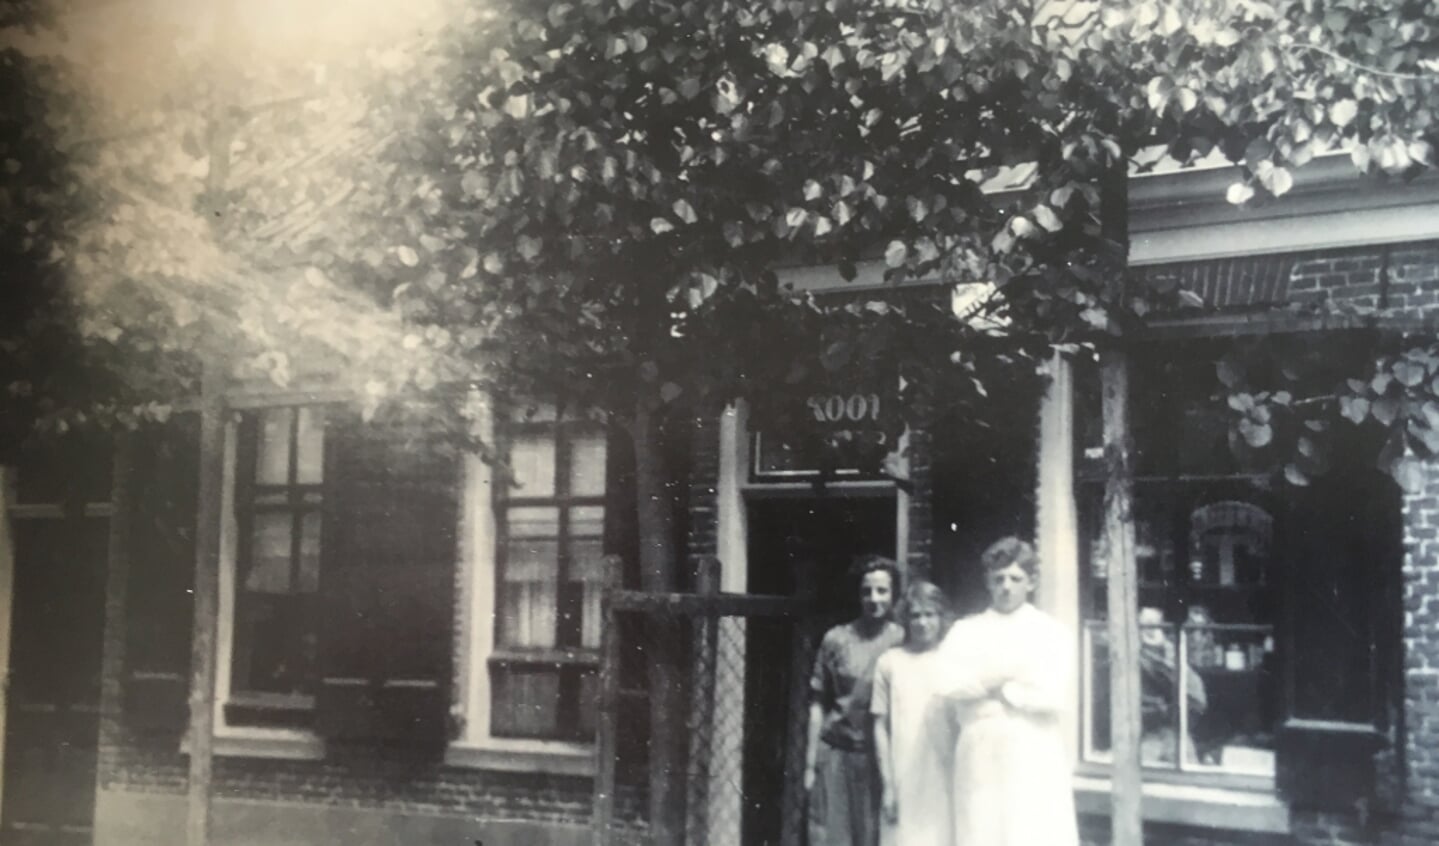 De eerste winkel van bakker Koot in 1899.